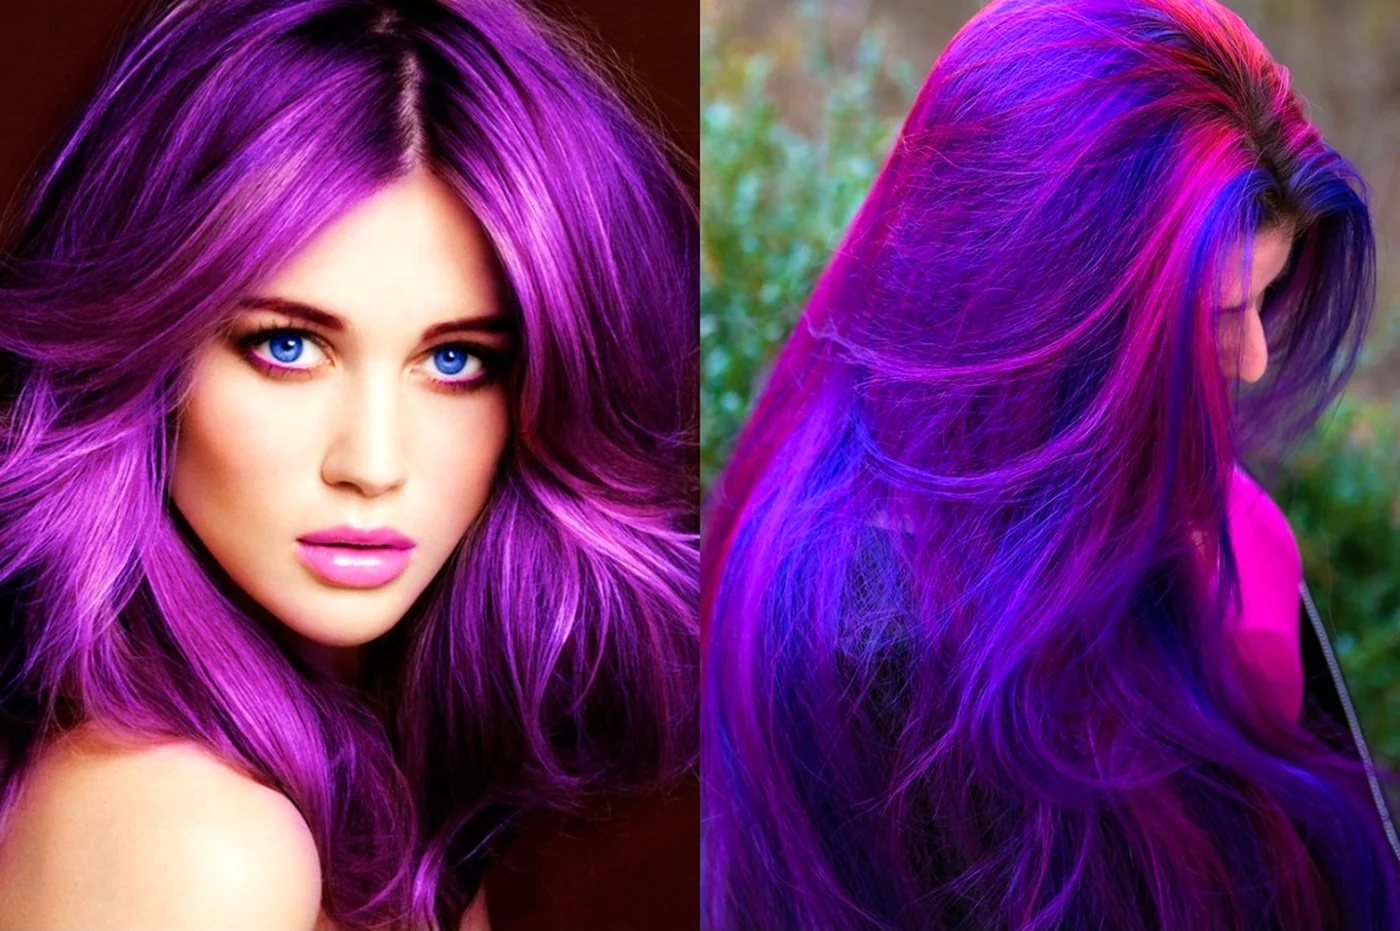 Фиолетовый цвет волос